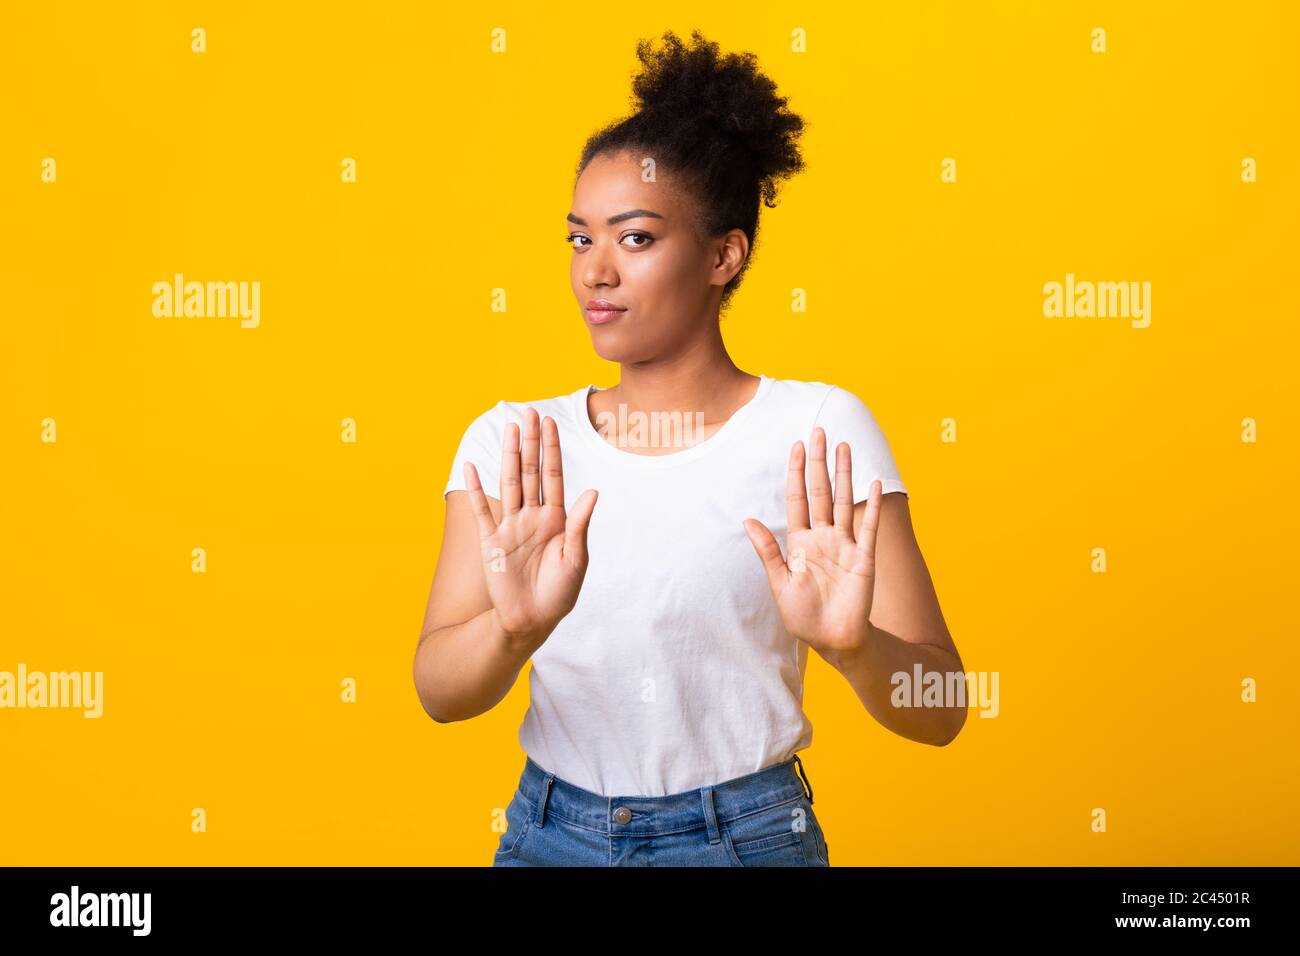 Ernst schwarzes Mädchen zeigt Stop-Zeichen mit zwei Händen Stockfoto